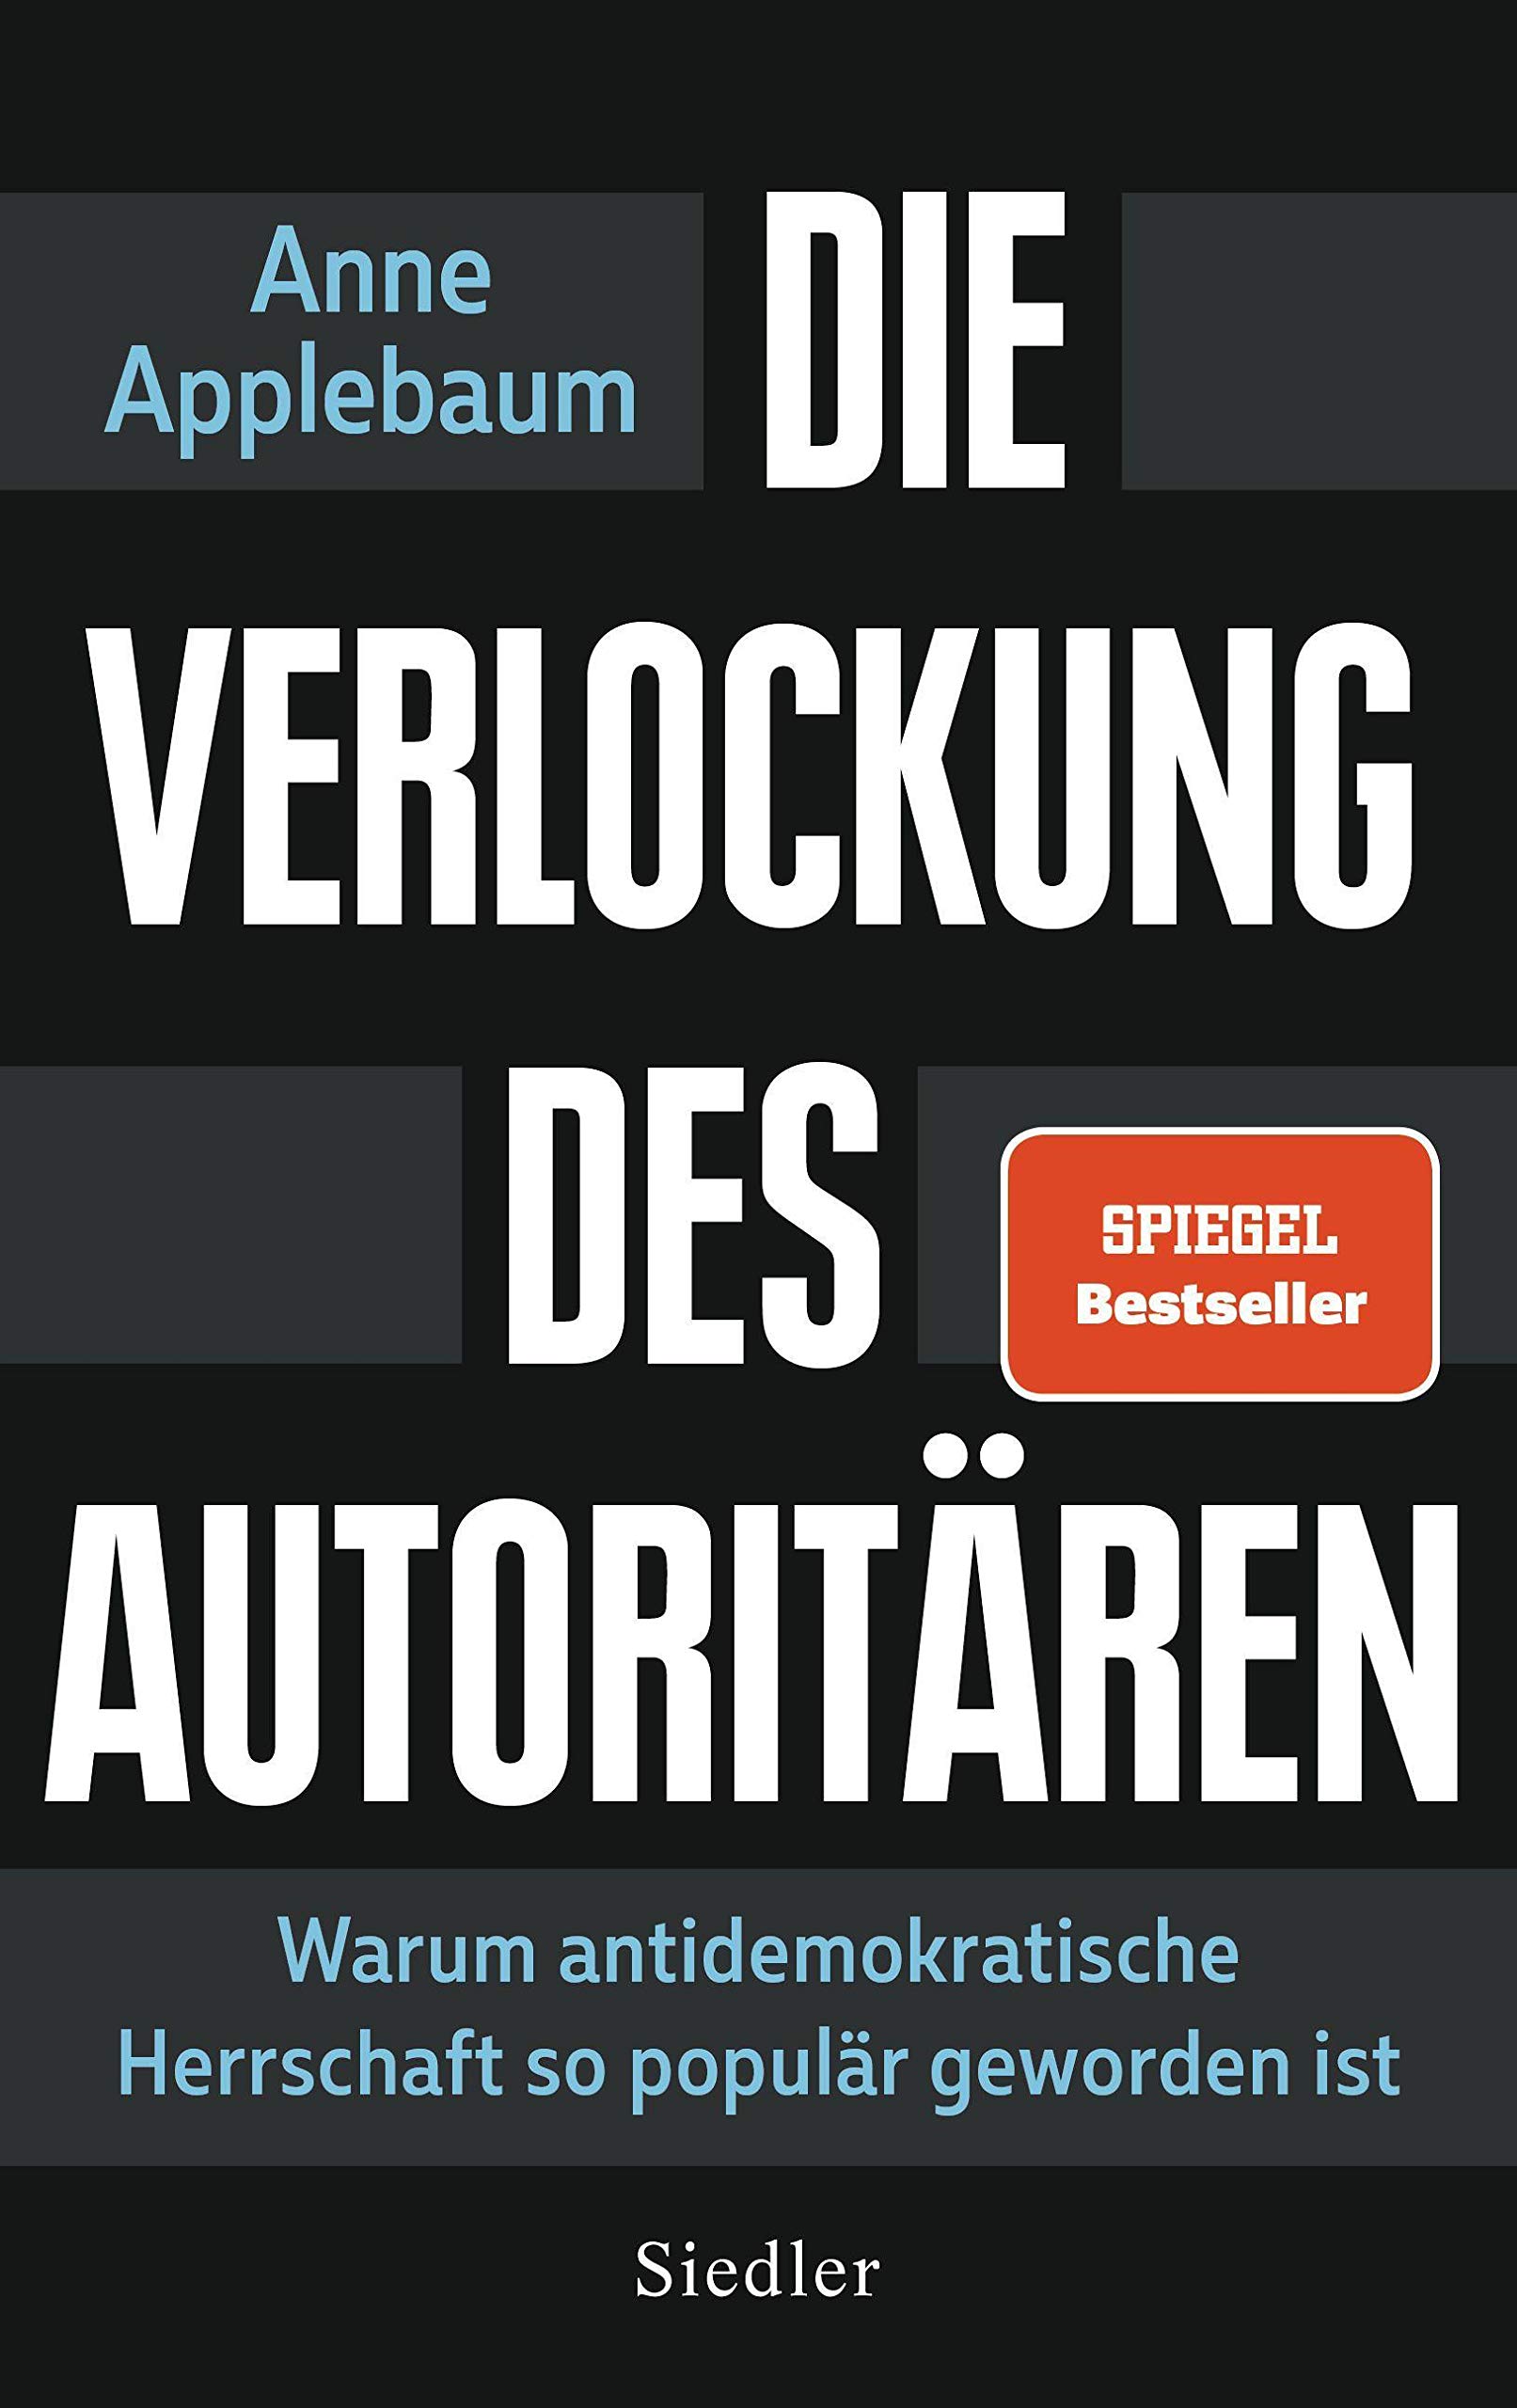 Anne Applebaum: Die Verlockung des Autoritären (Paperback, German language, 2021, Siedler Verlag)